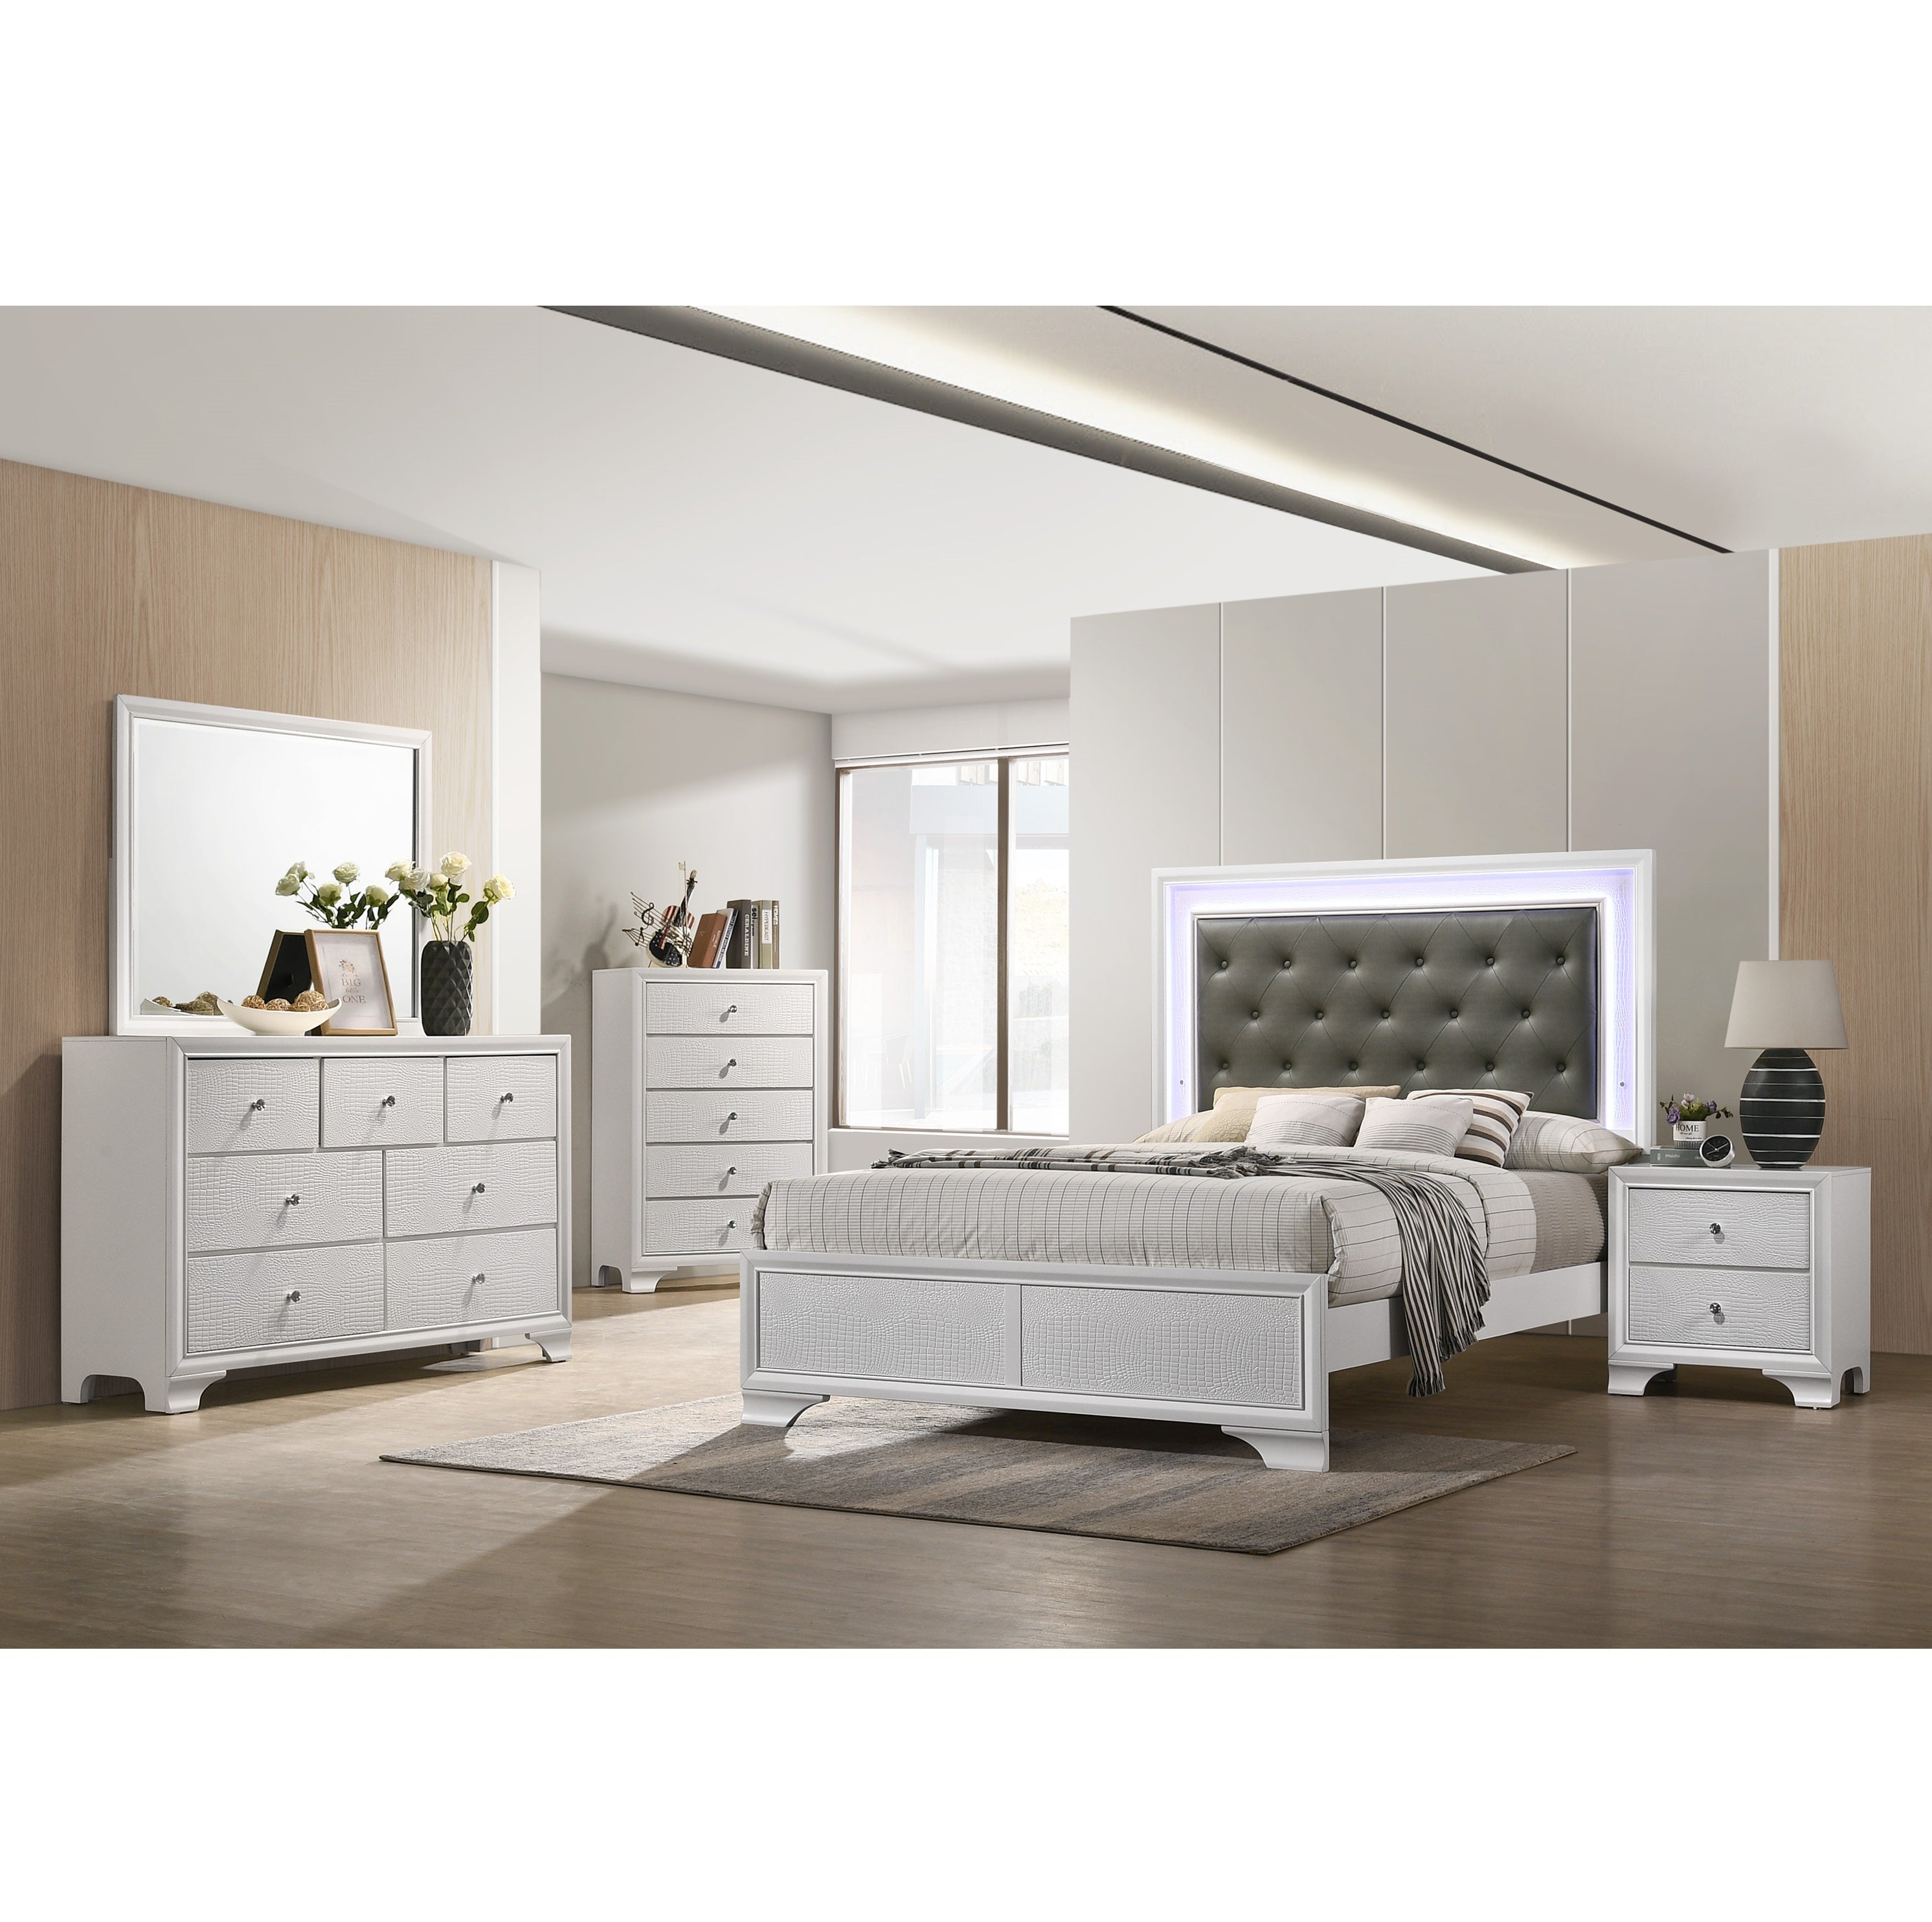 B4310 Lyssa - Queen Bed + Dresser + Mirror + Nightstand